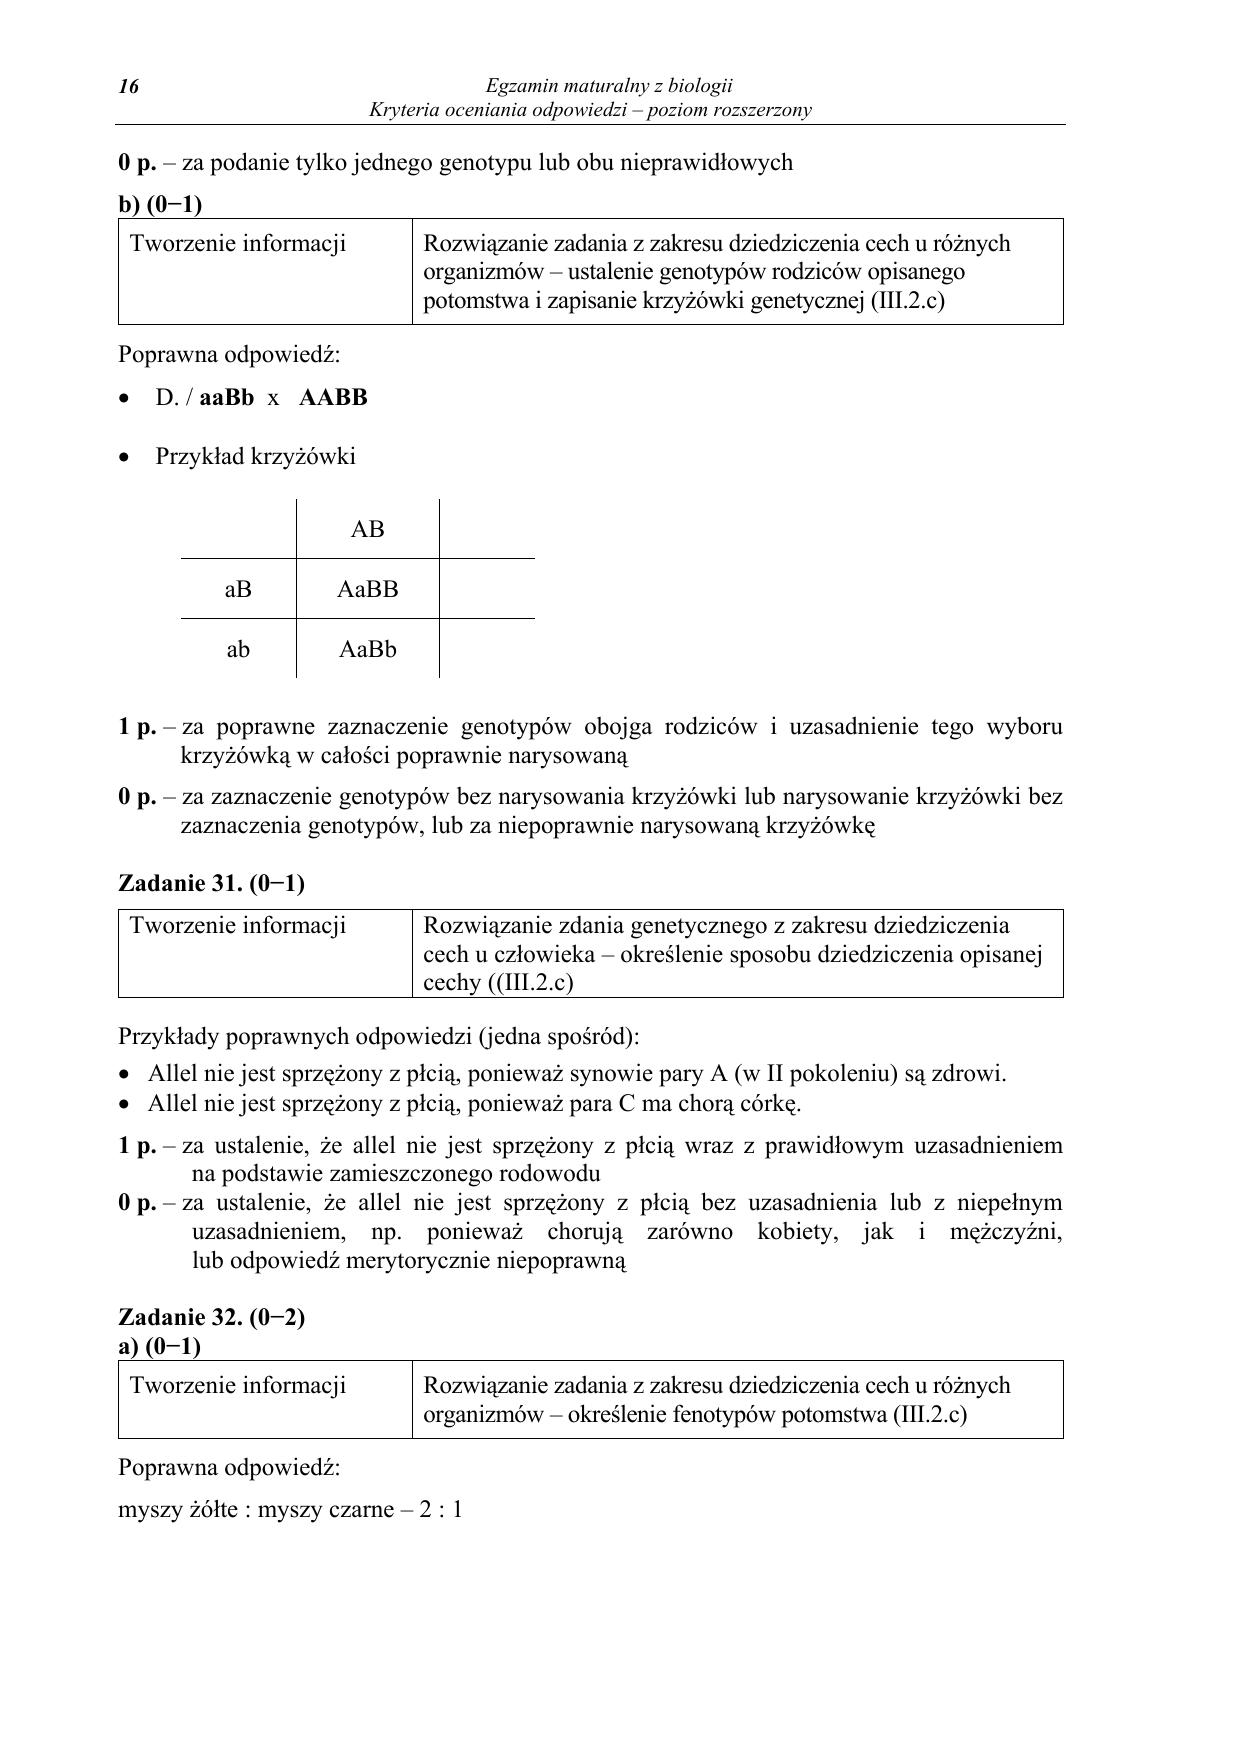 odpowiedzi-biologia-poziom-rozszerzony-matura-2012-16